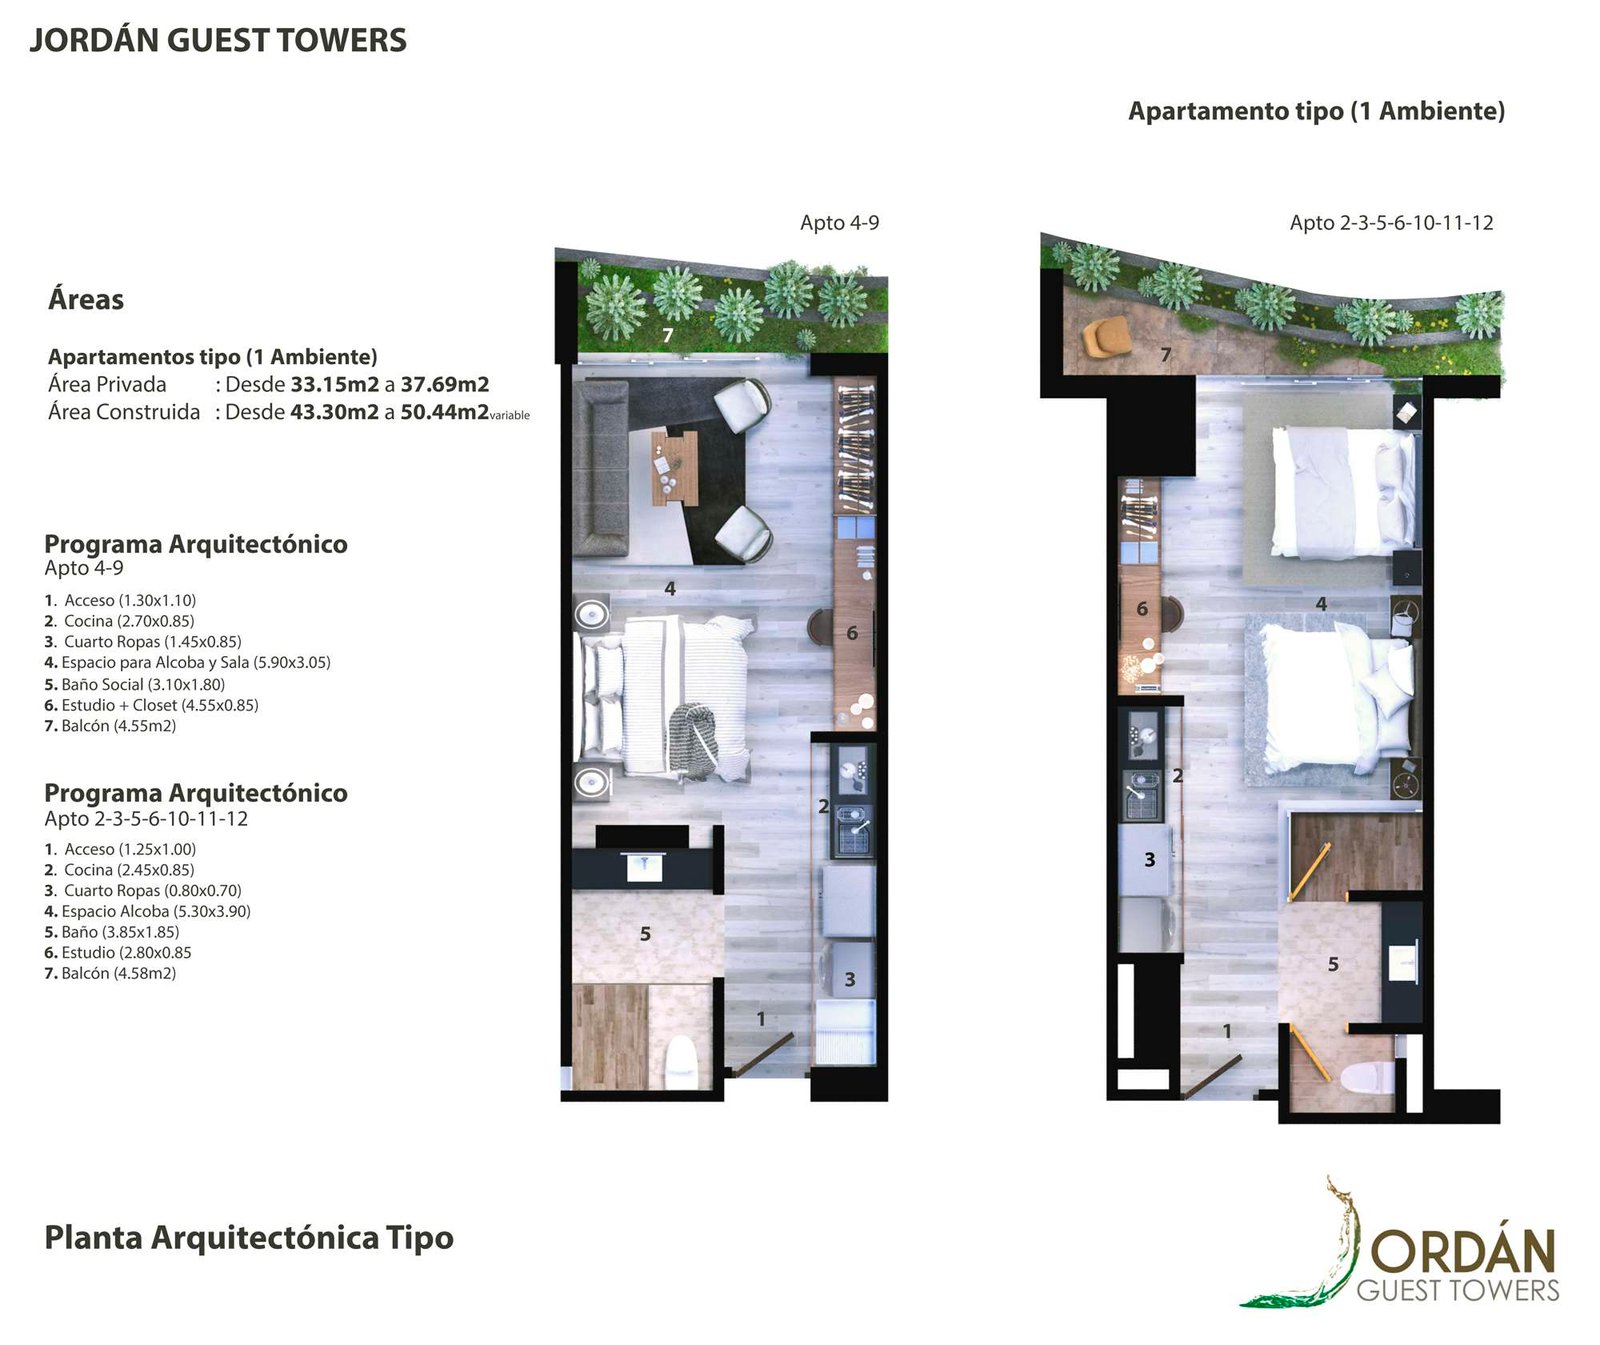 Planta arquitectónica apartamento 1 ambiente Guest Towers proyecto Armenia